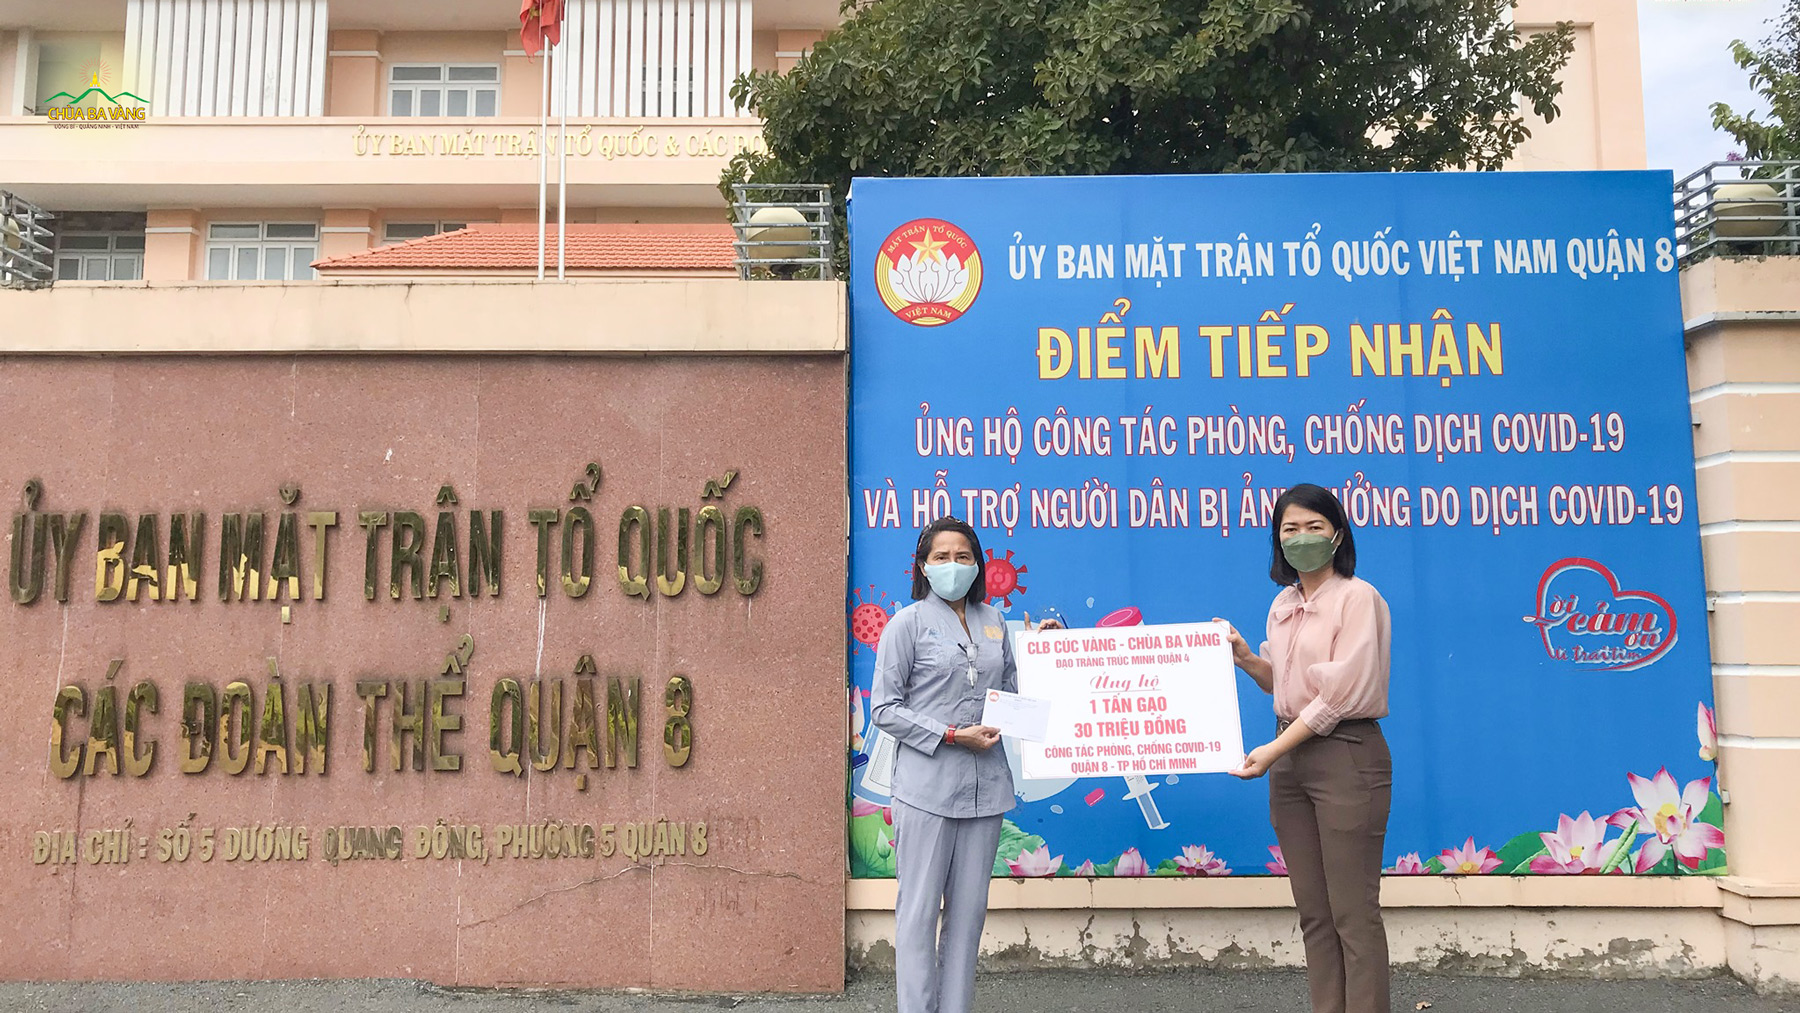 Đại diện các Phật tử chùa Ba Vàng trao tặng 30 triệu đồng và 1 tấn gạo đến Ủy ban MTTQVN Quận 8 Thành phố Hồ Chí Minh để hỗ trợ công tác phòng chống, đẩy lùi dịch bệnh Covid-19 trên địa bàn Thành phố